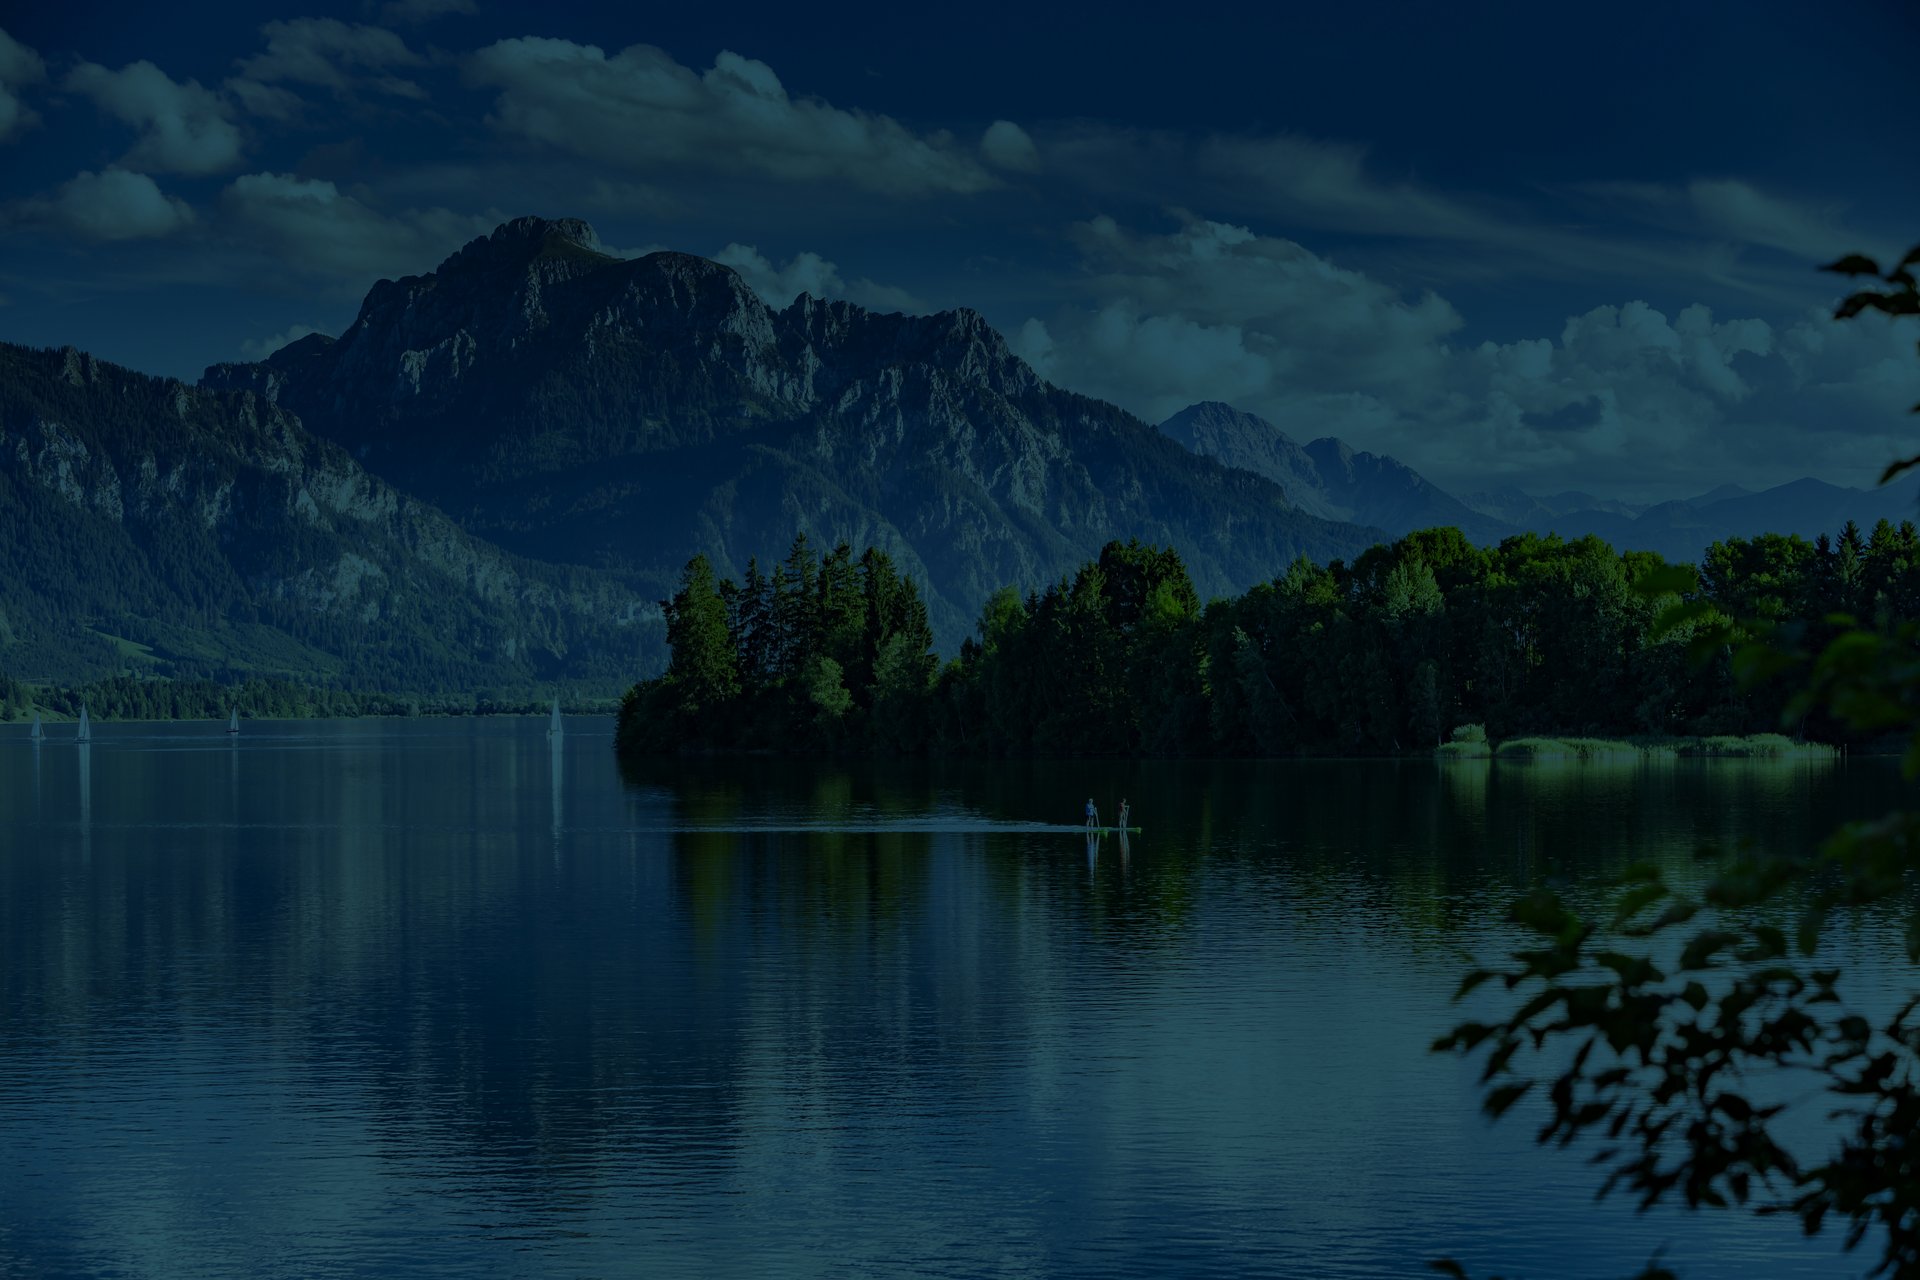 Landschaftsaufnahme des Forggensees in der Nähe von Füssen. Im Hintergrund ist ein wunderschönes Bergpanorama zu sehen.